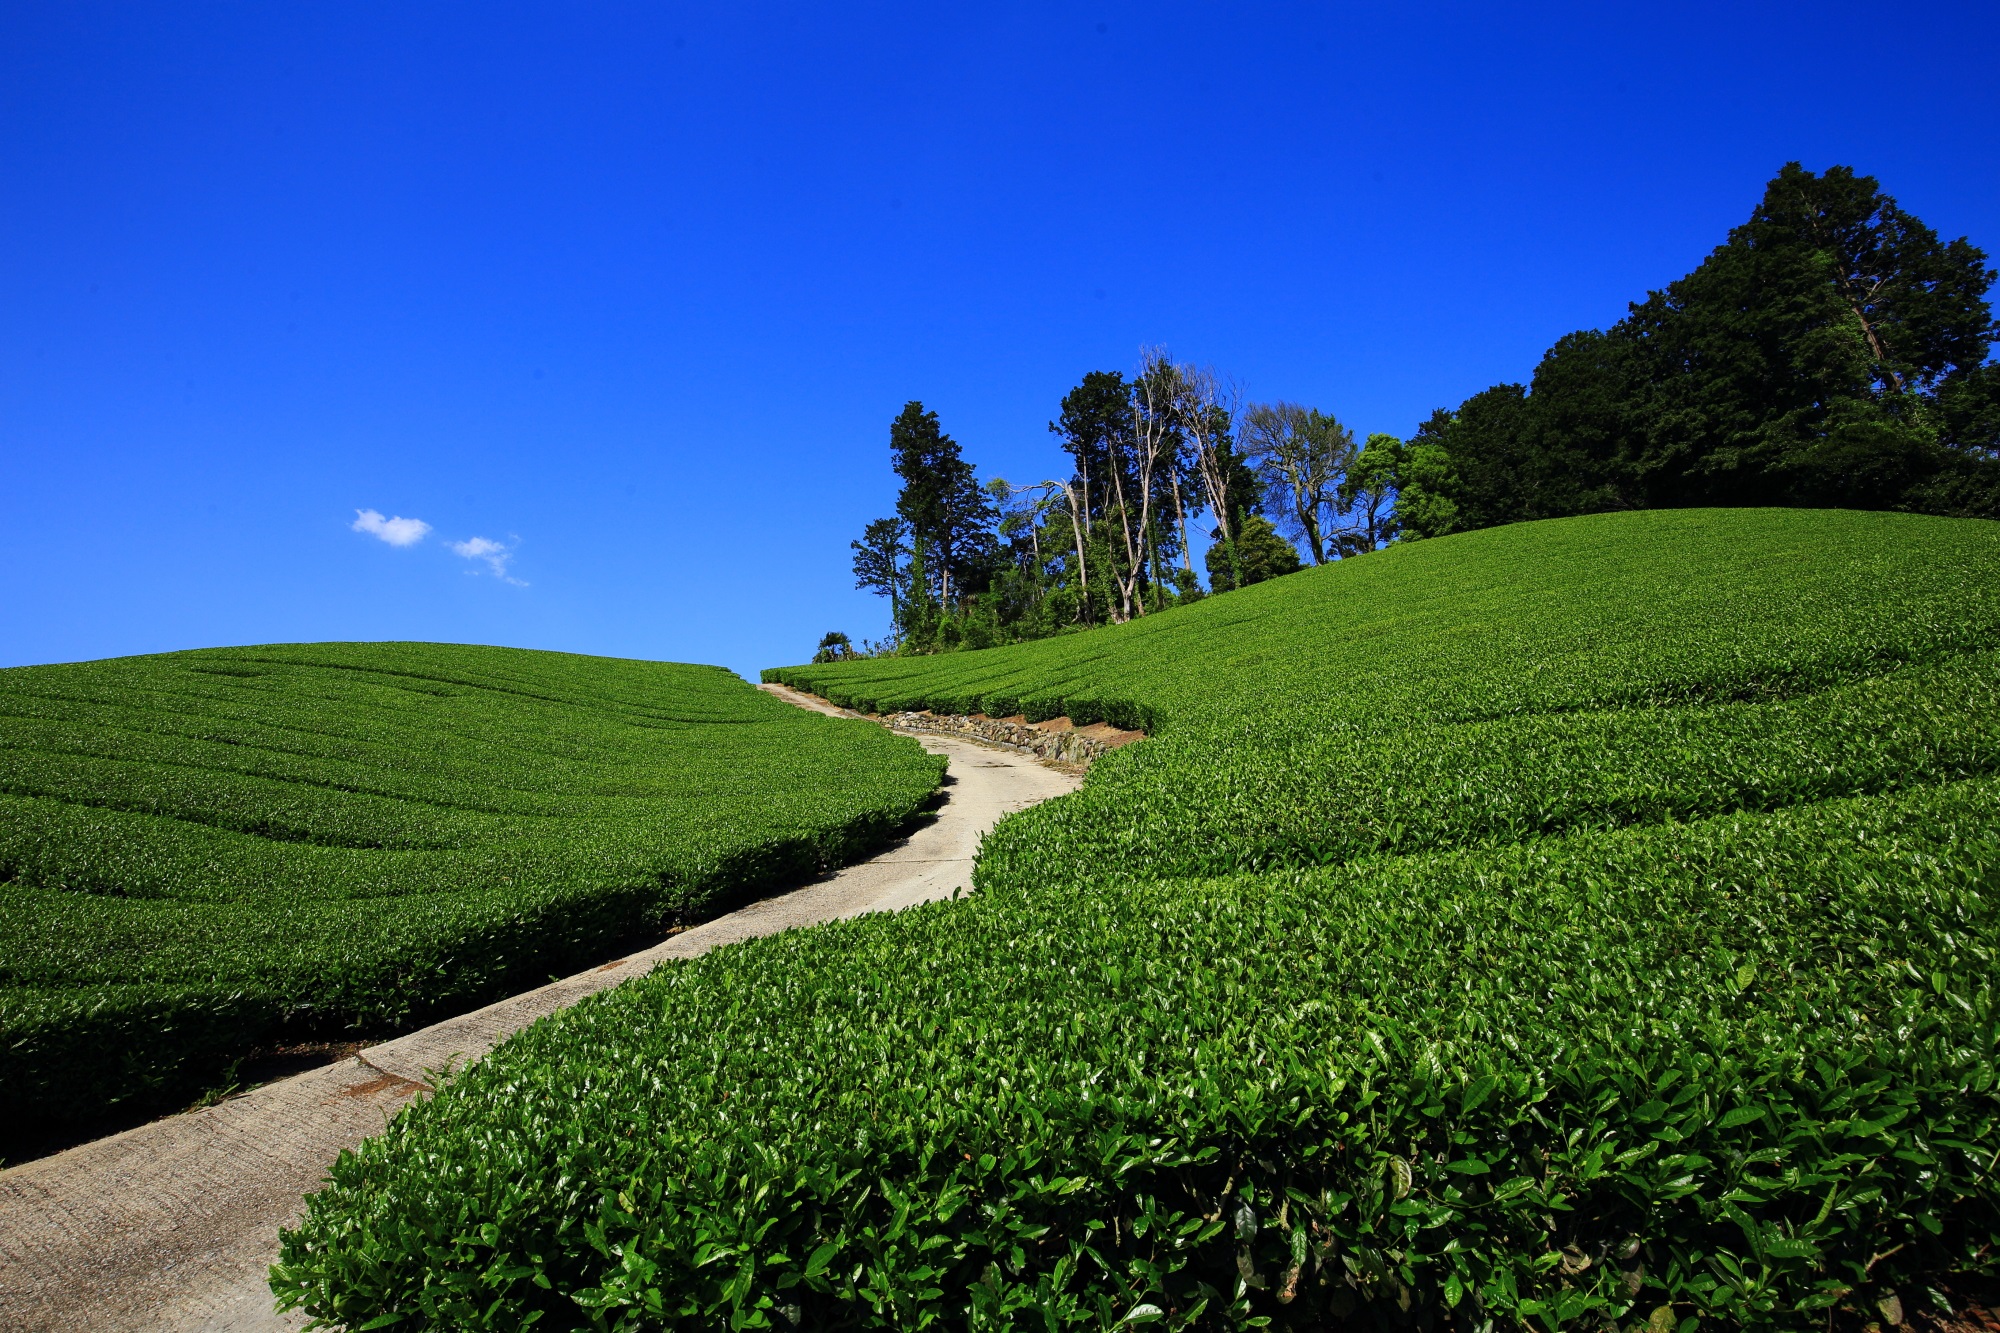 和束町の素晴らしいお茶畑と茶源郷と呼ばれる見事な景観